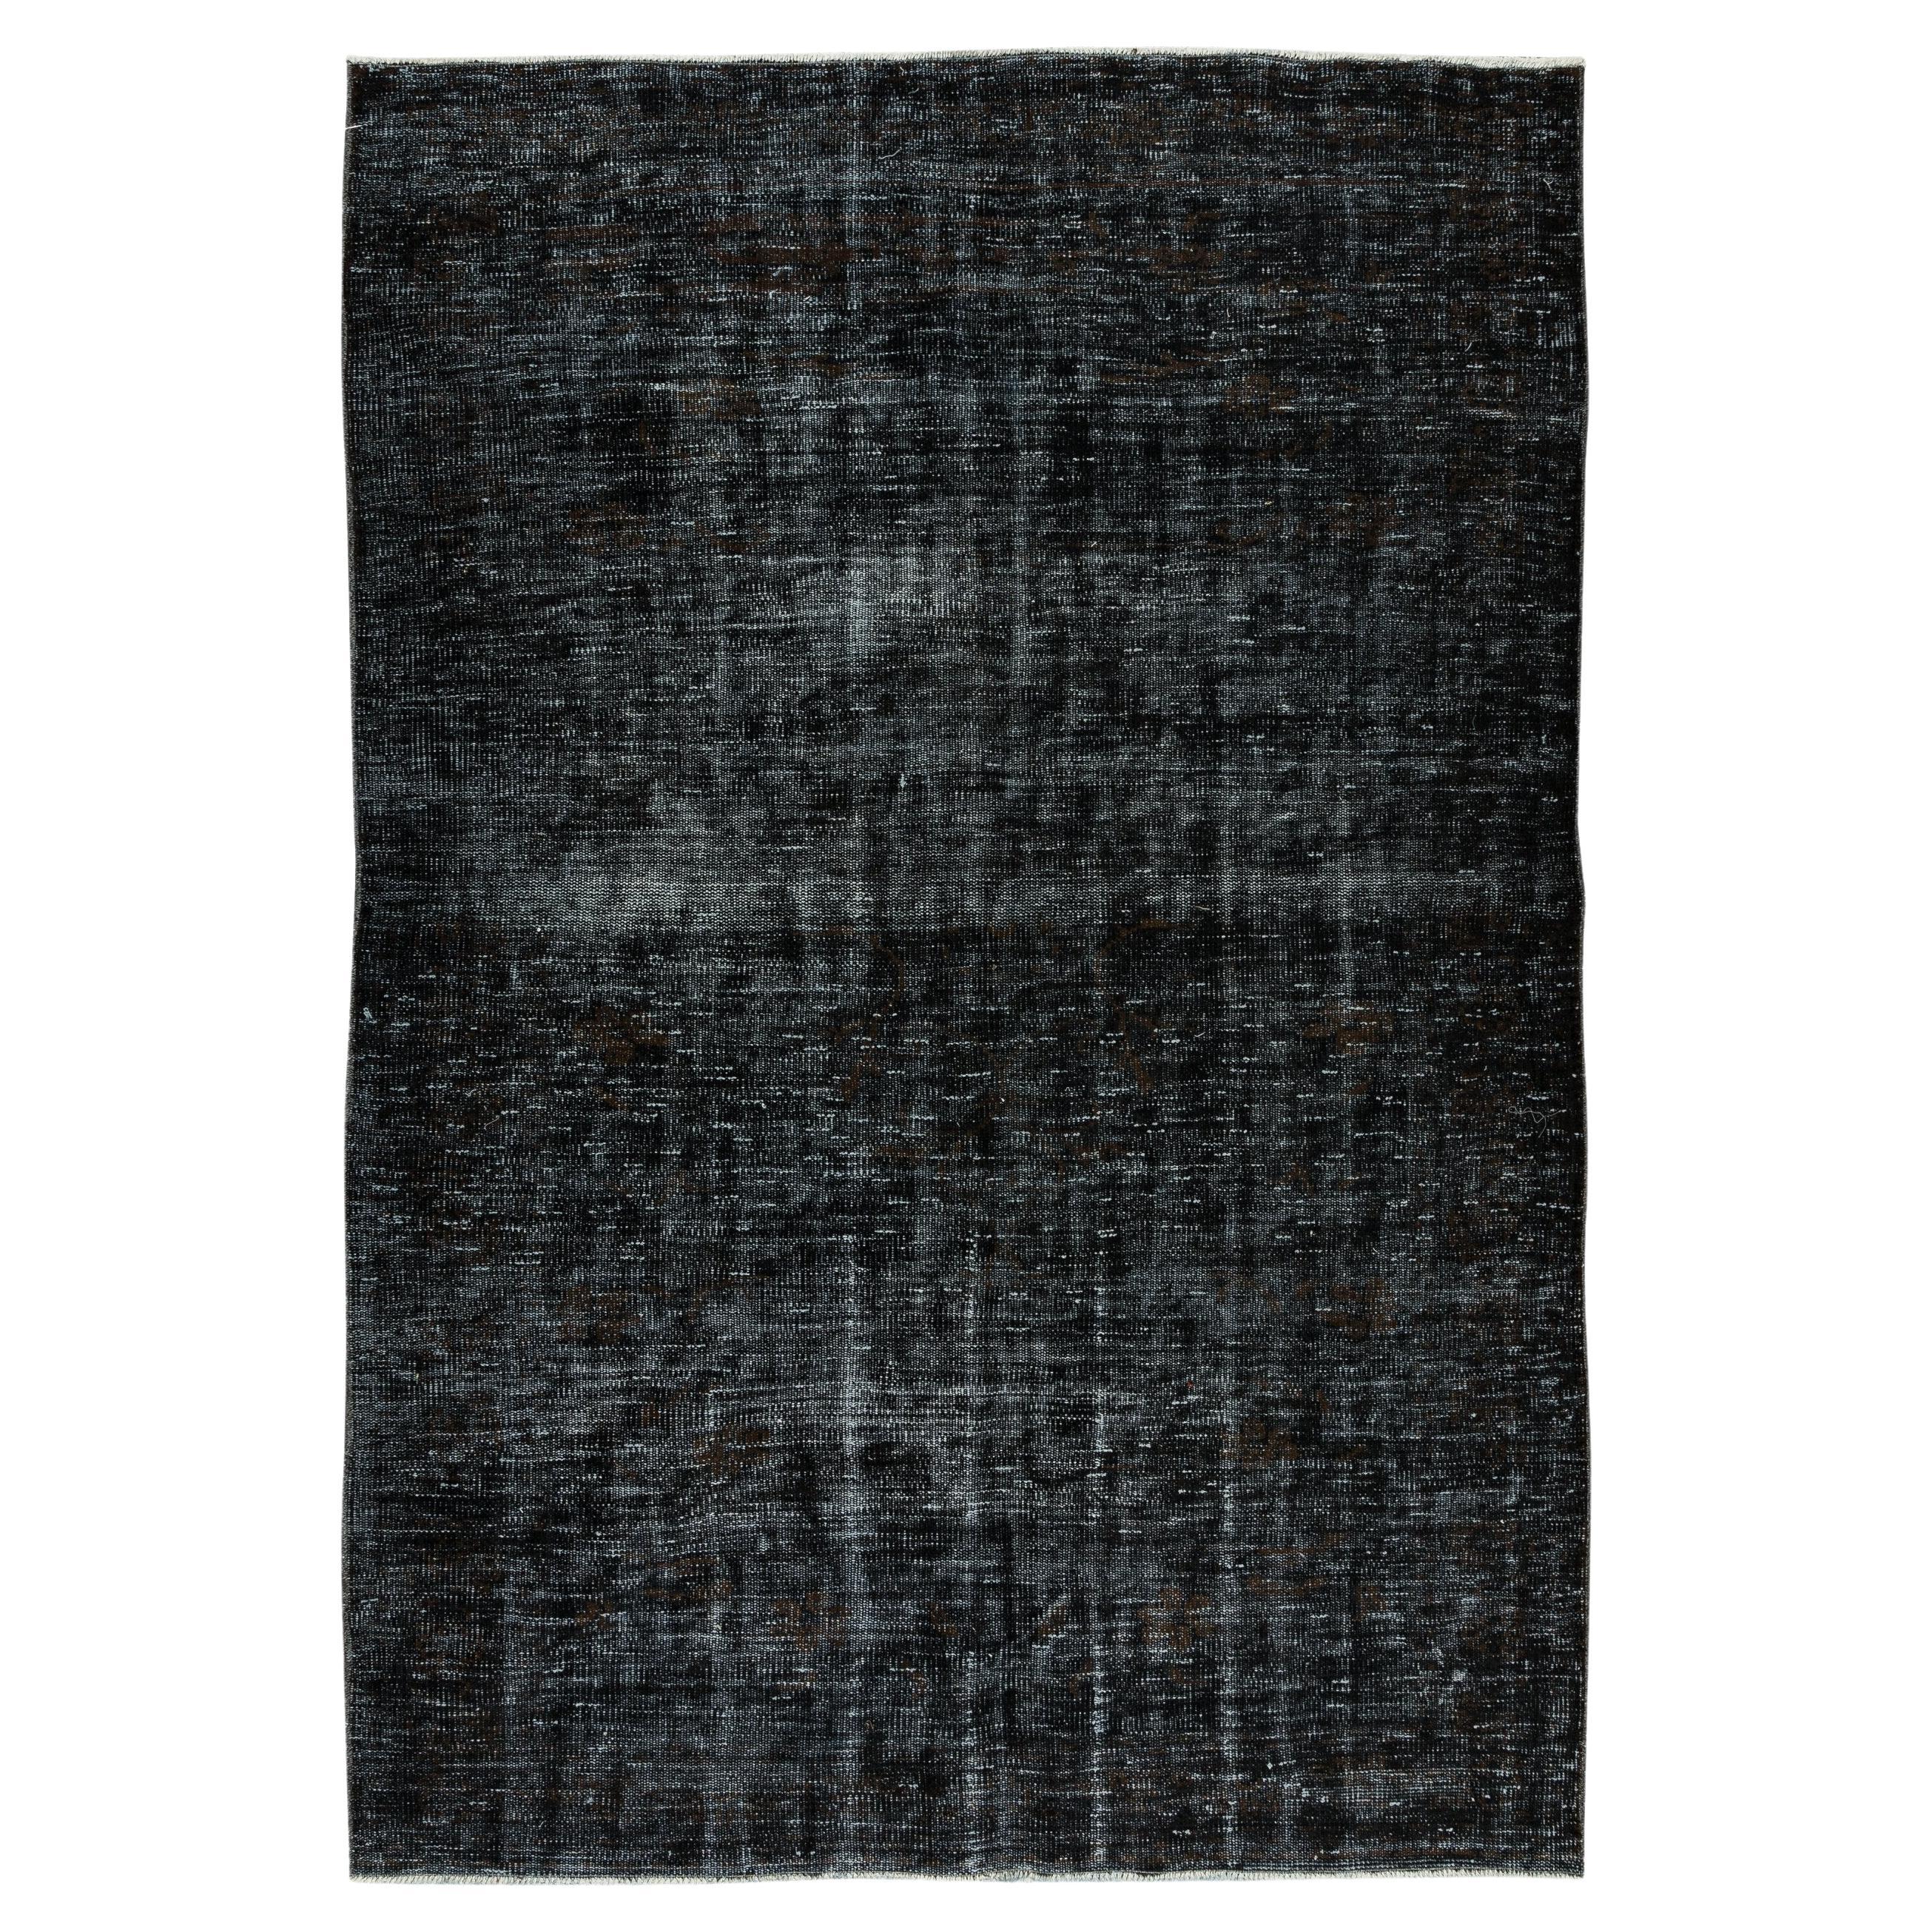 Tapis turc contemporain teinté à la main en noir, tapis artisanal vintage en vente